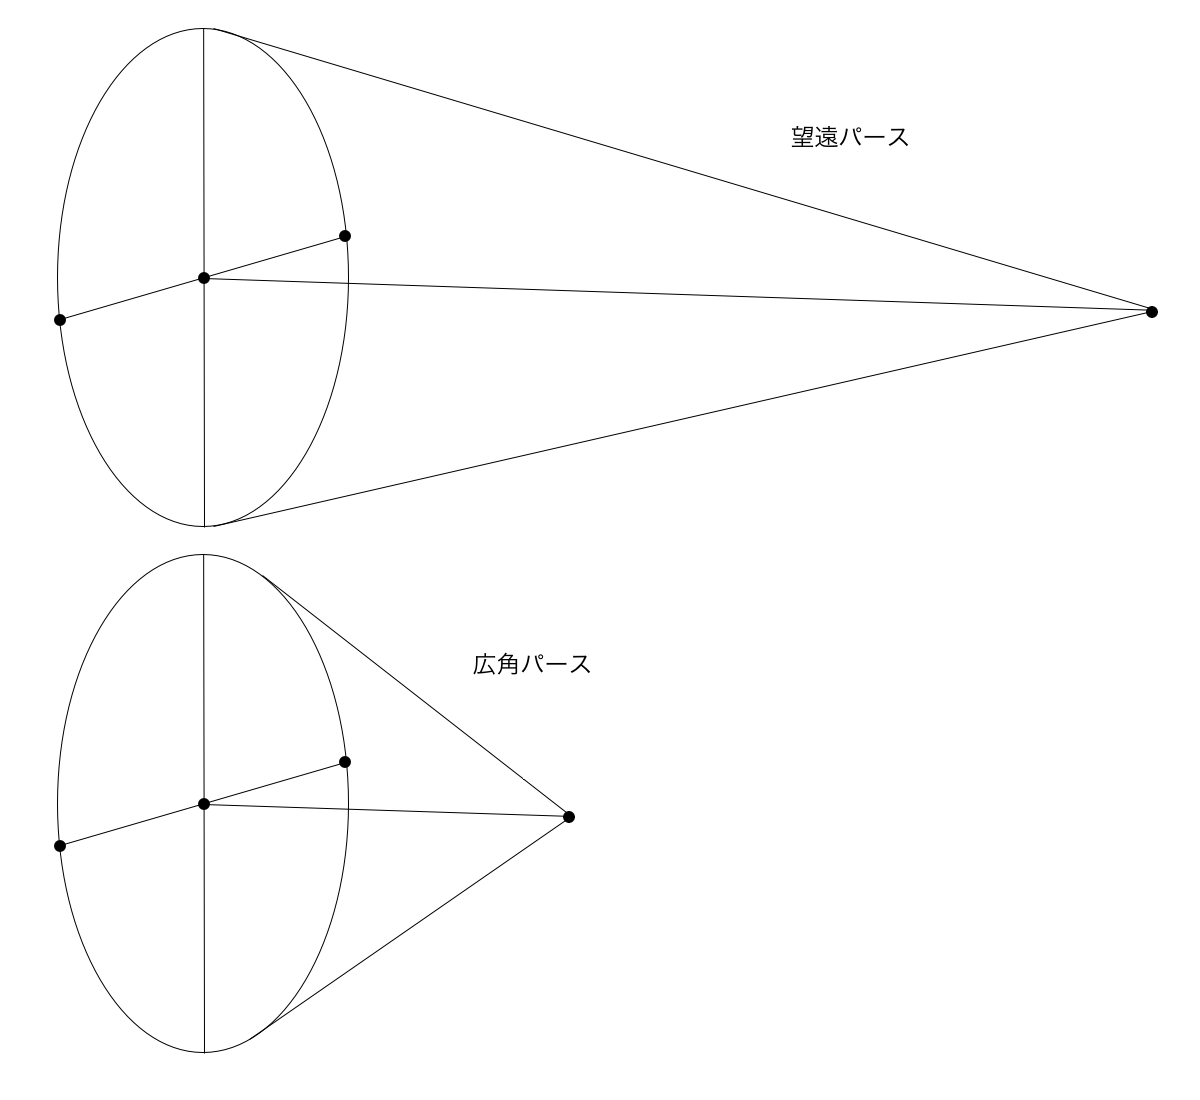 望遠と広角の視円錐